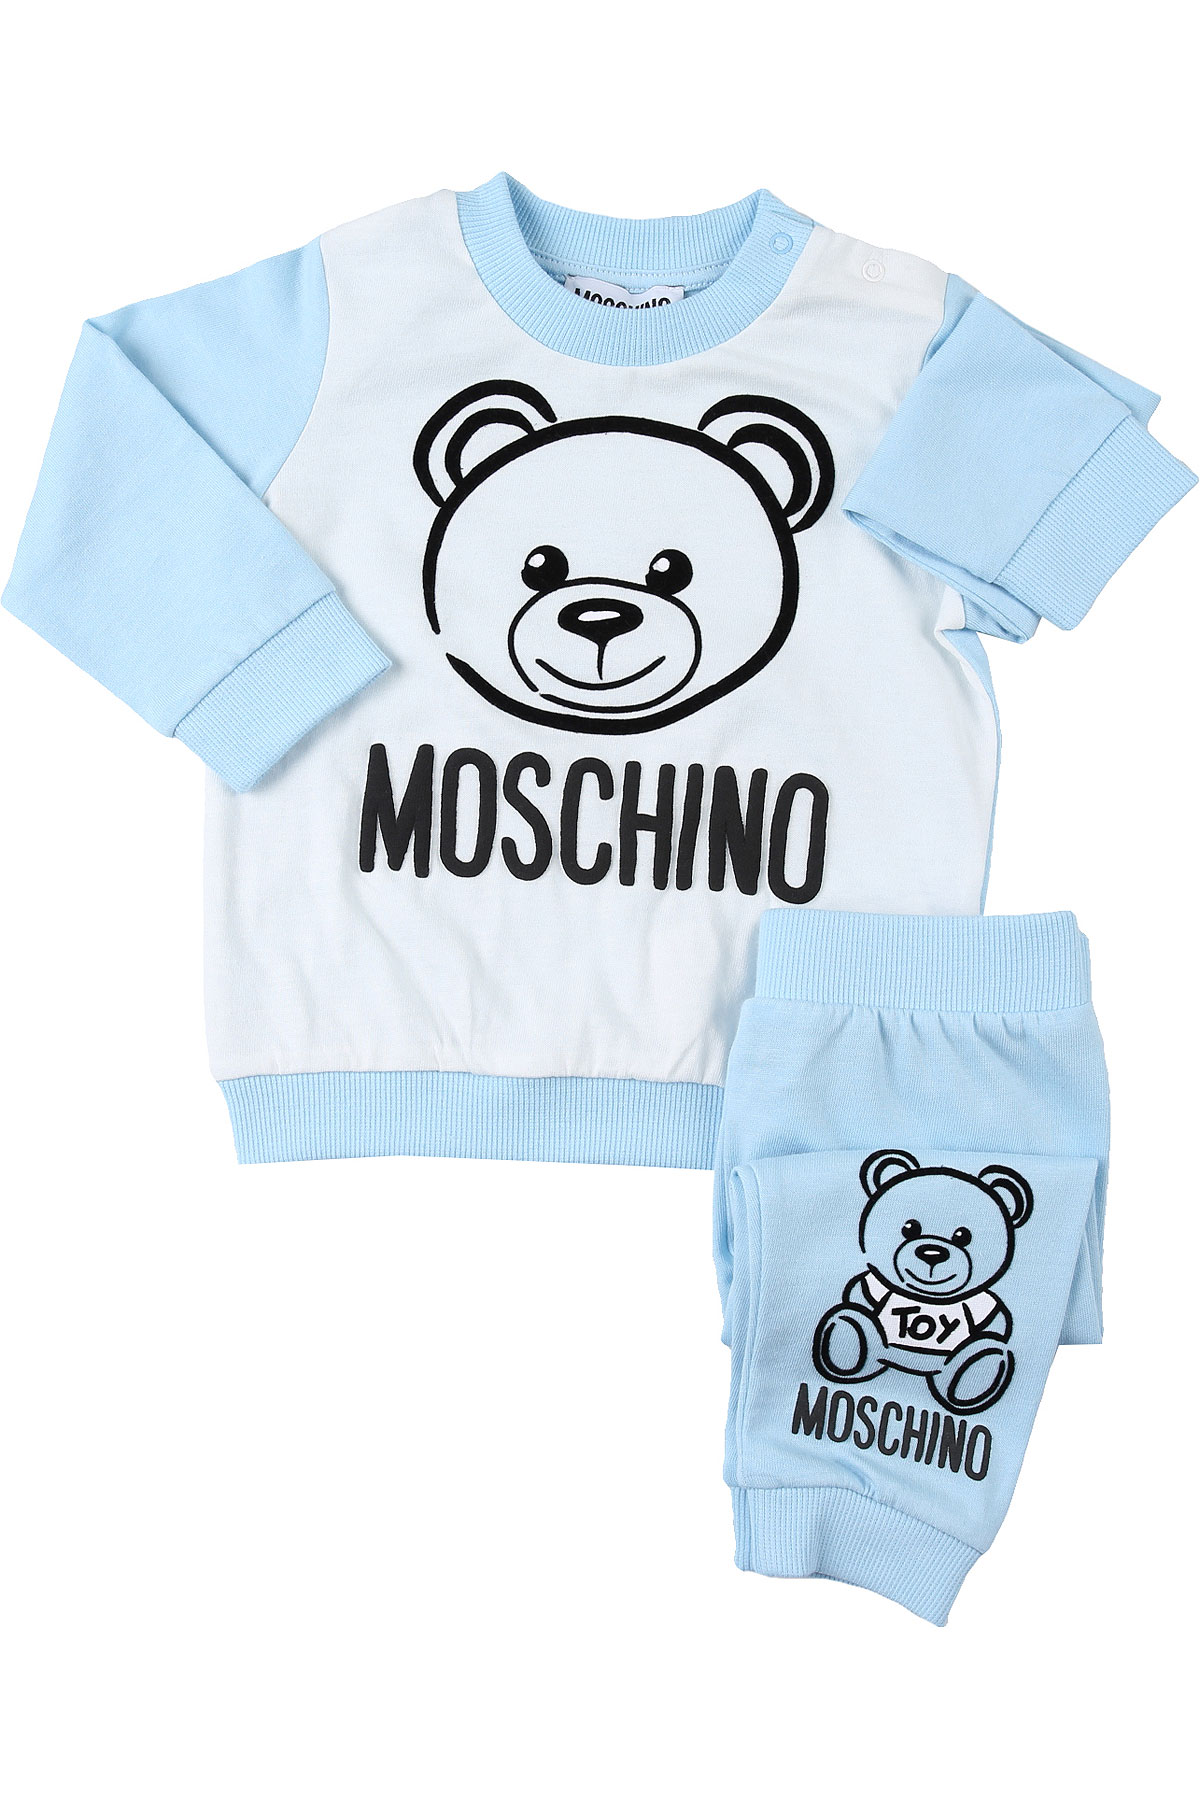 Moschino Baby Set für Jungen Günstig im Sale, Azur-Blau, Baumwolle, 2017, 12 M 18M 2Y 3Y 6M 9M